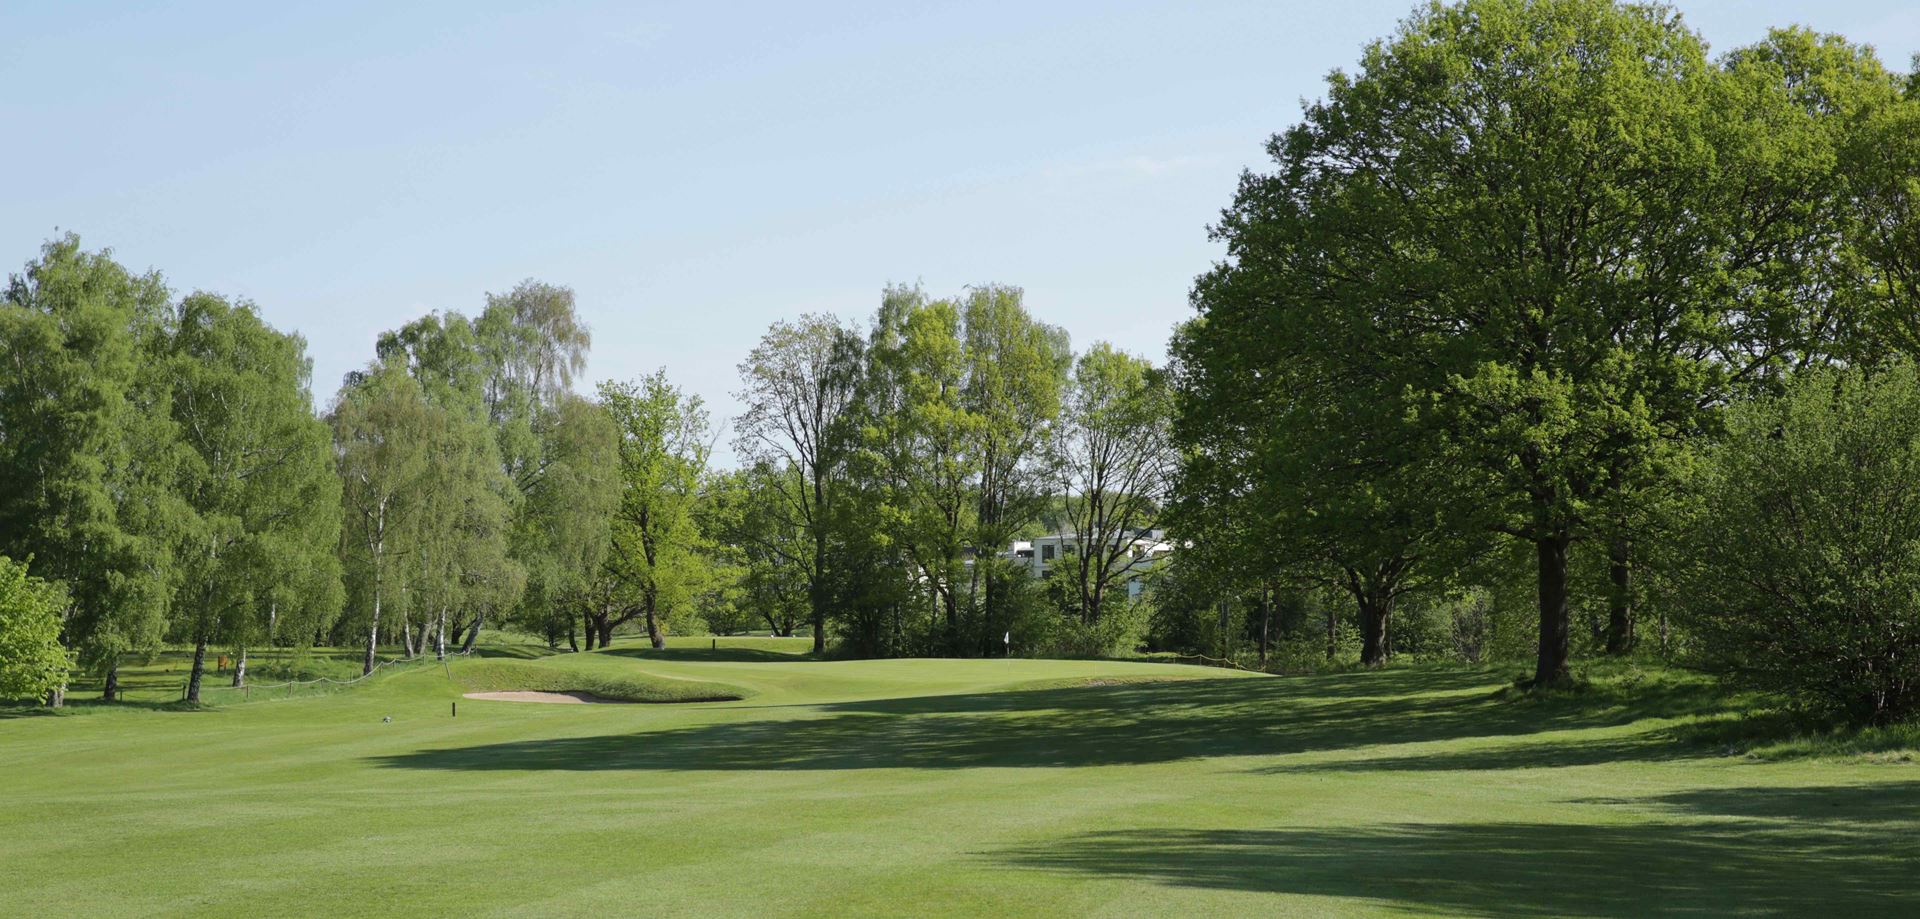 Mediate Hængsel køber Danske golfbaner - Spil golf i Rungsted Golf Klub - GolfersGlobe